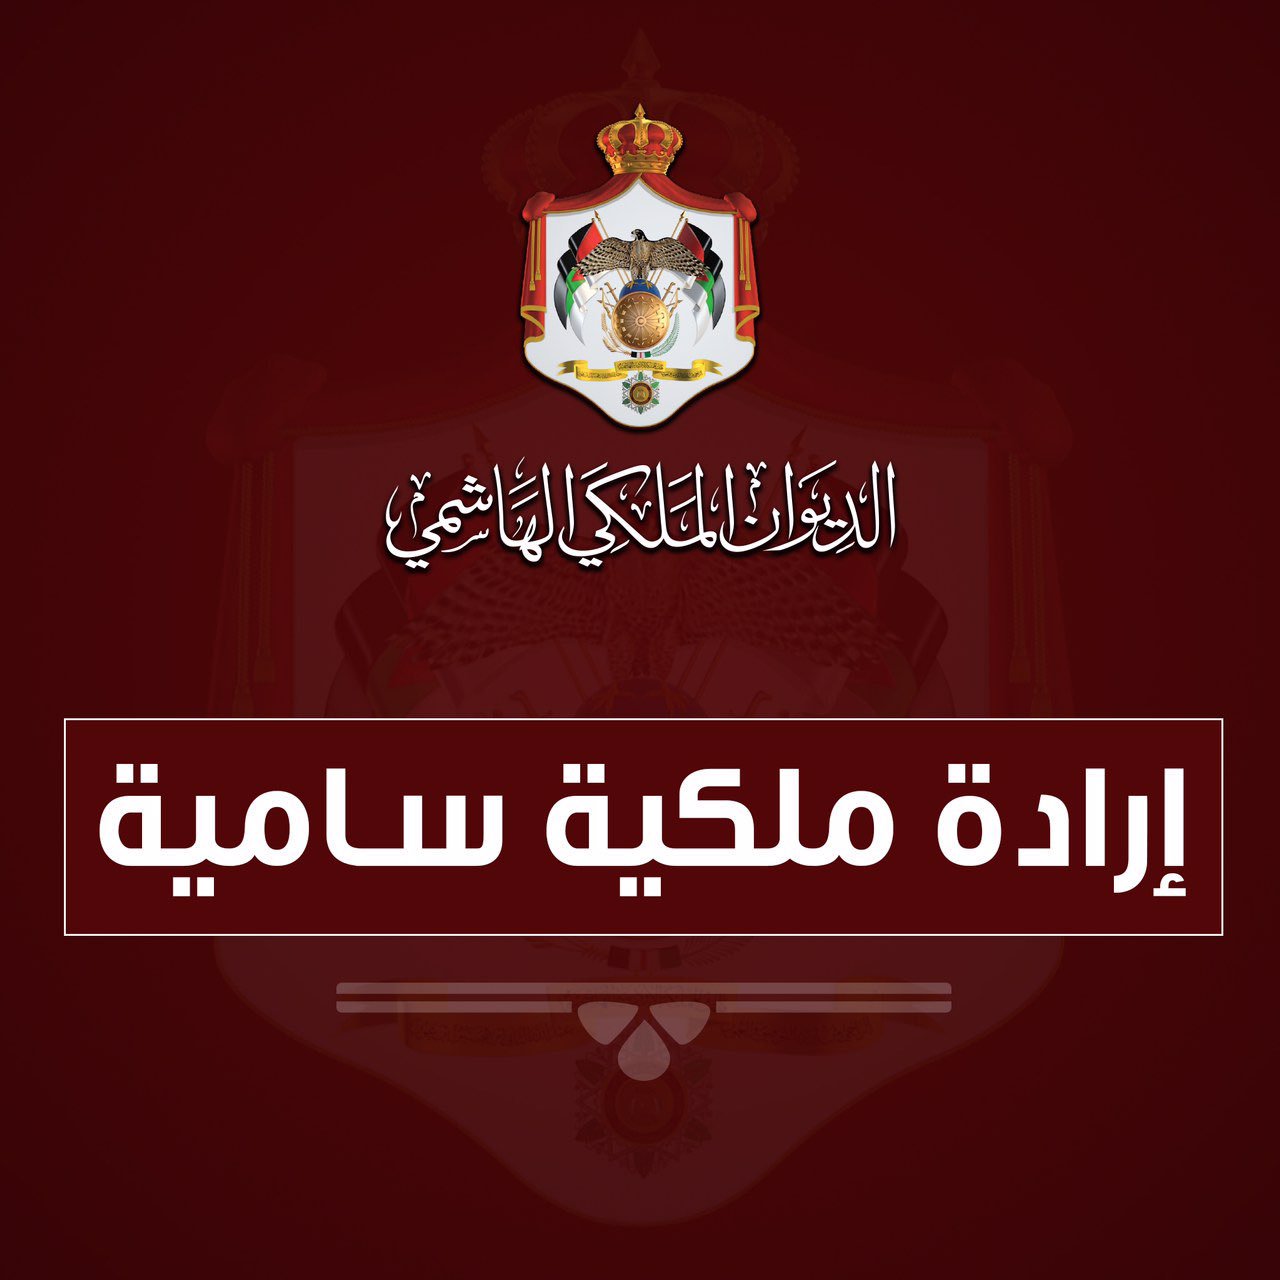 الديوان الملكي الأردني: منح لقب “صاحبة السمو الملكي الأميرة رجوة الحسين المعظمة” لزوجة ولي العهد